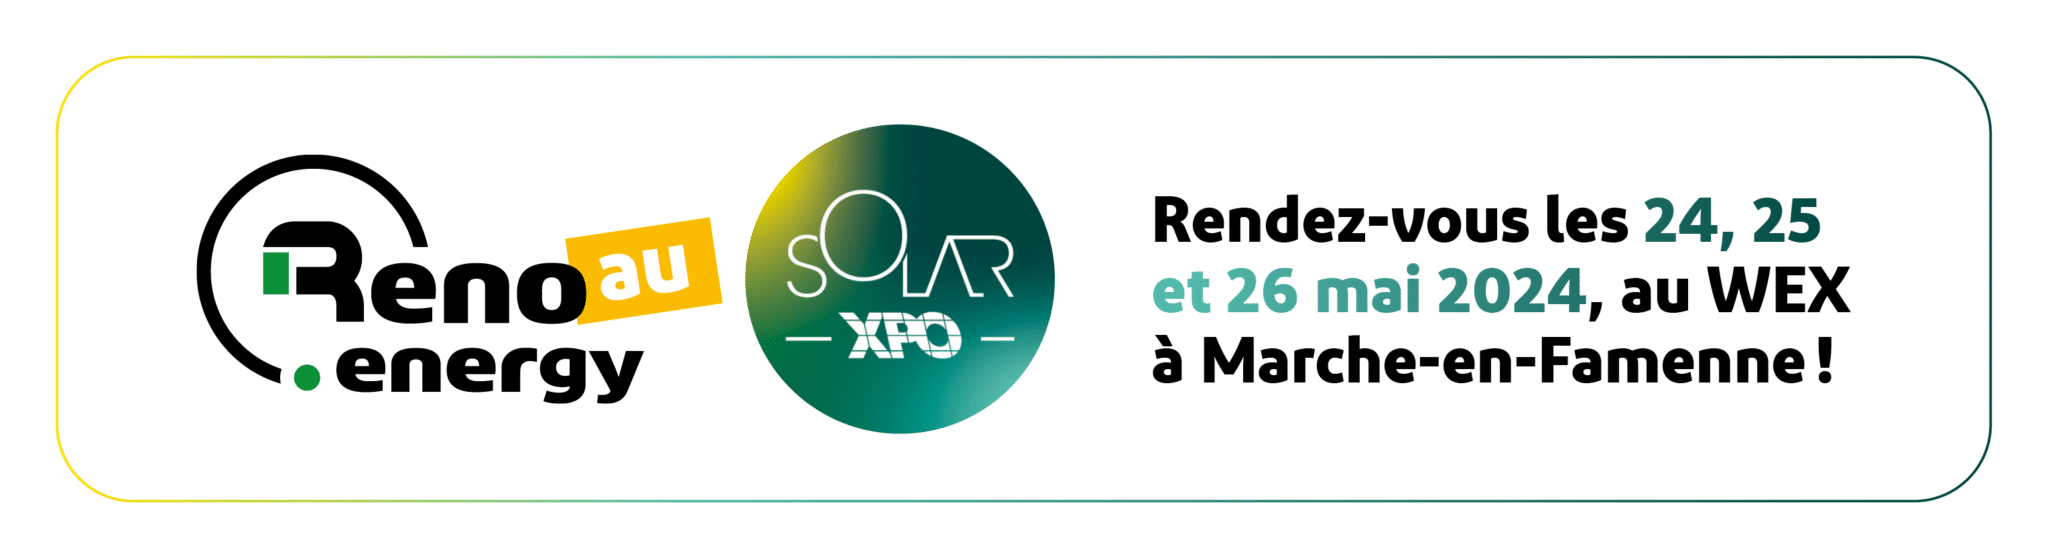 Reno.energy sera présent au Solar Xpo les 24, 25 et 26 mai à Marche-en-Famenne